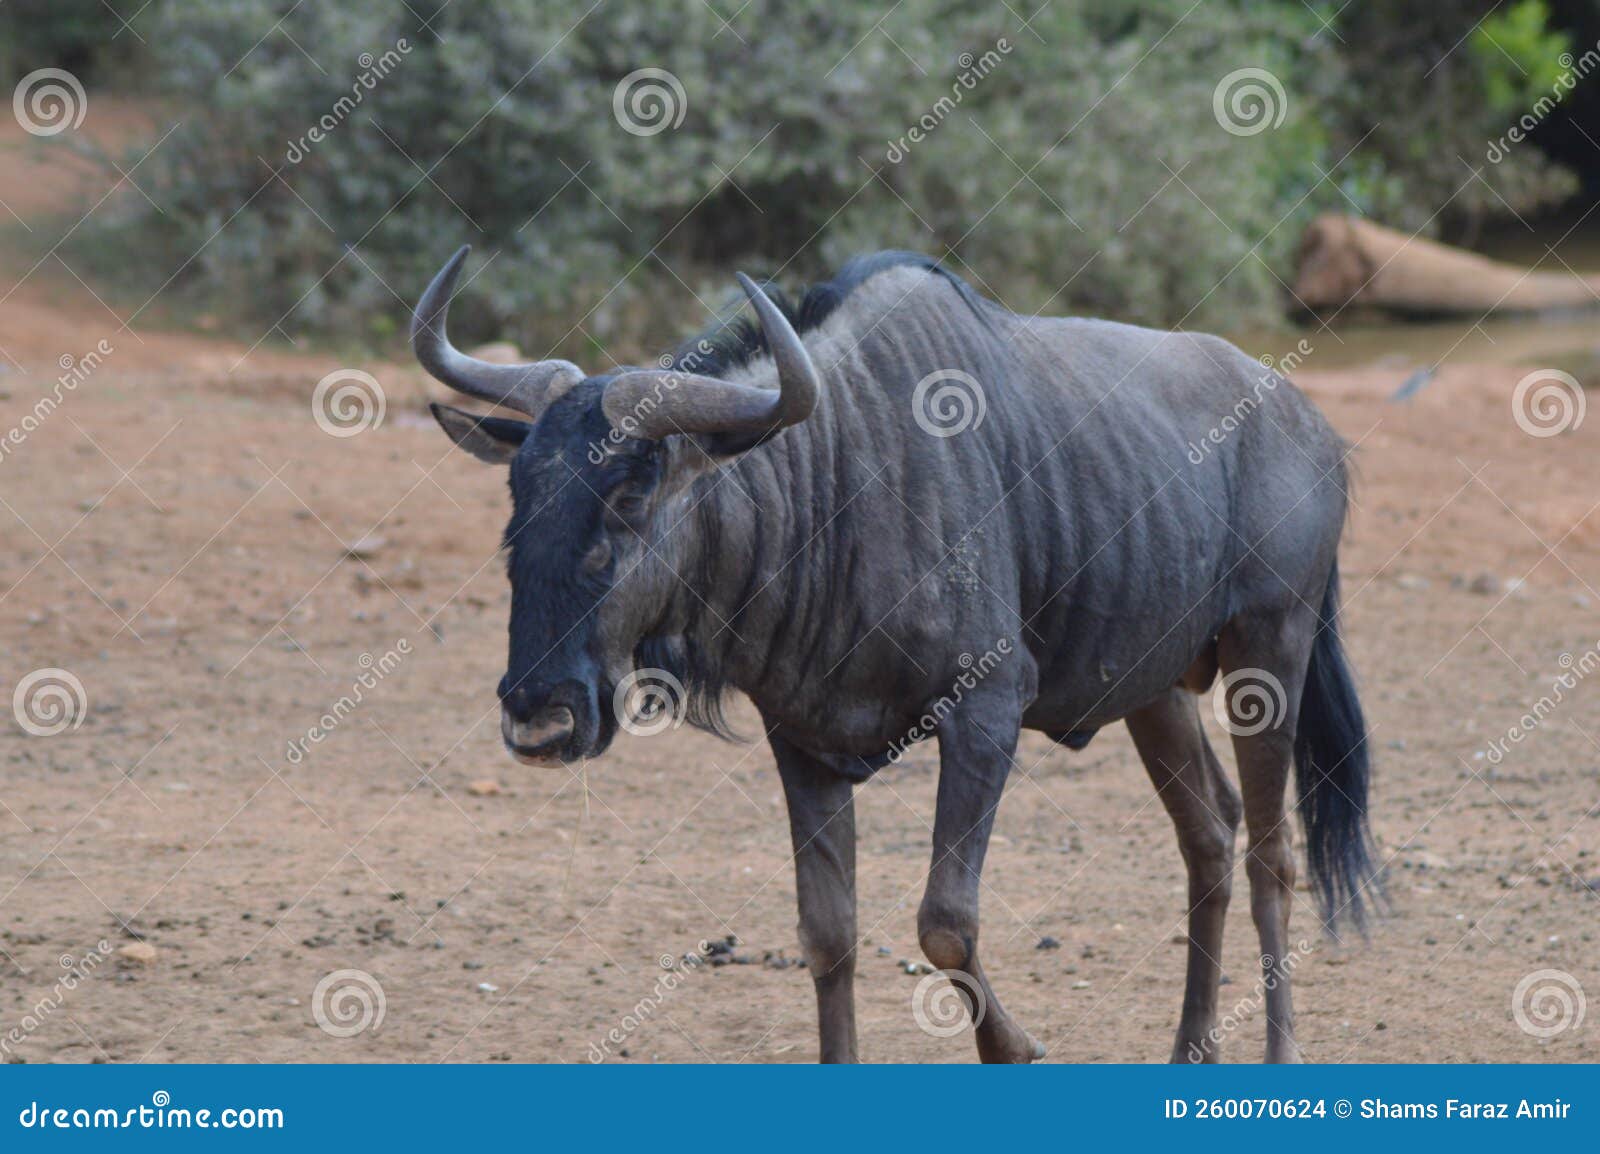 blue wildebeest in kruger national park